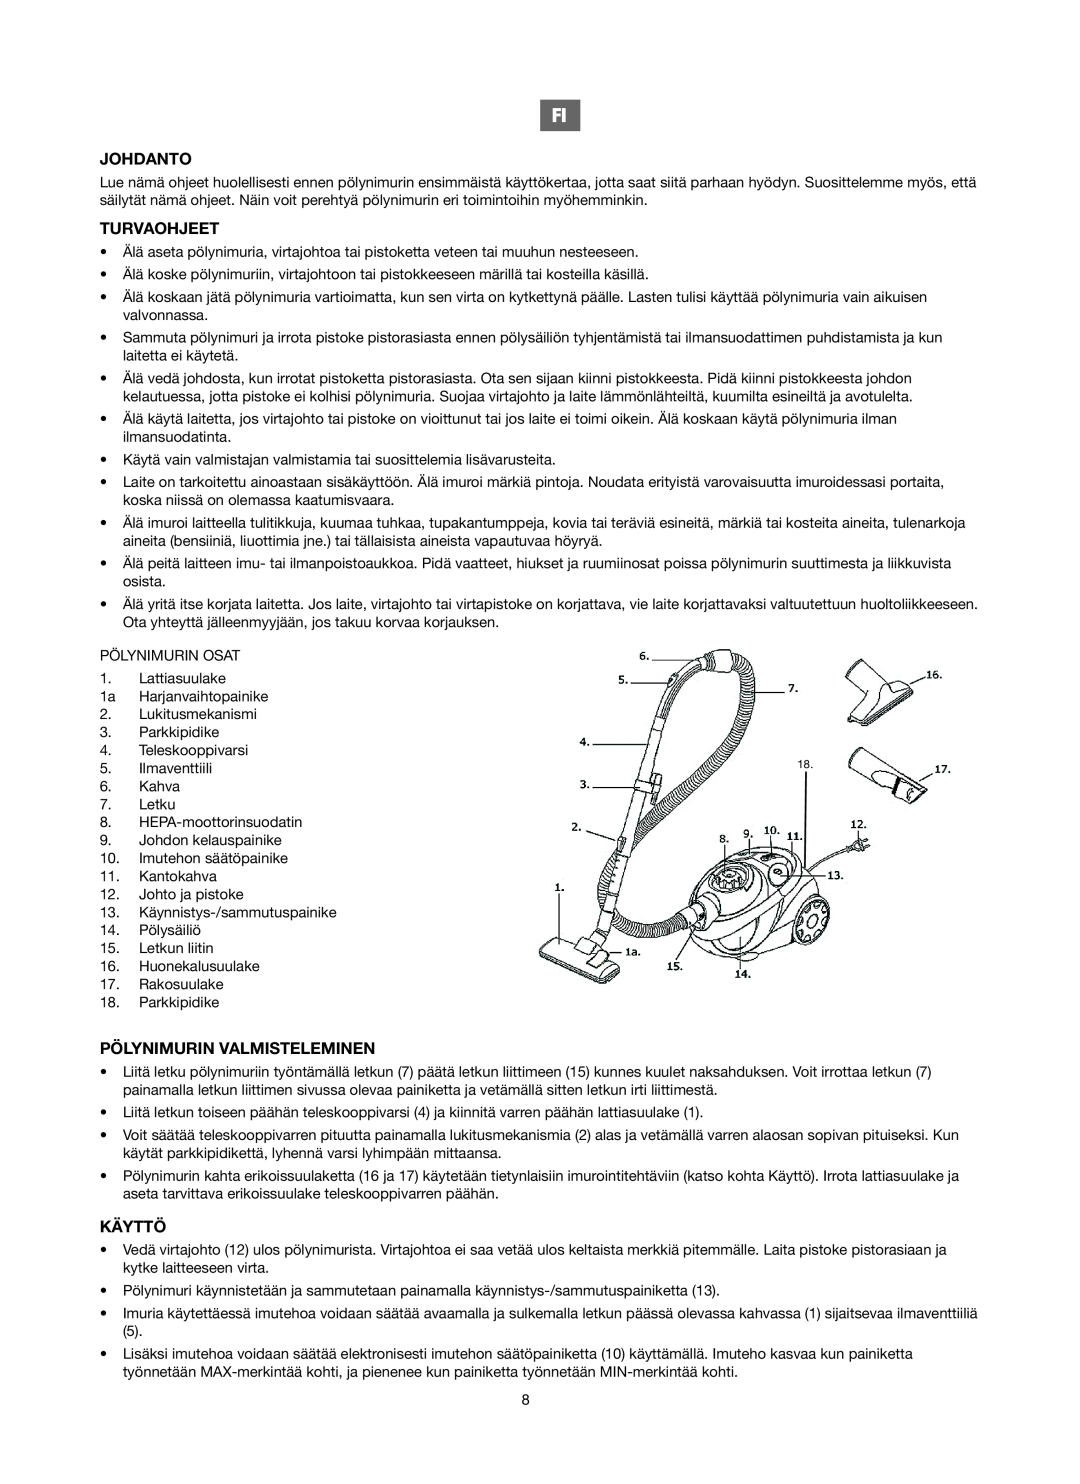 Melissa 740-106 manual Johdanto, Turvaohjeet, Pölynimurin Valmisteleminen, Käyttö 